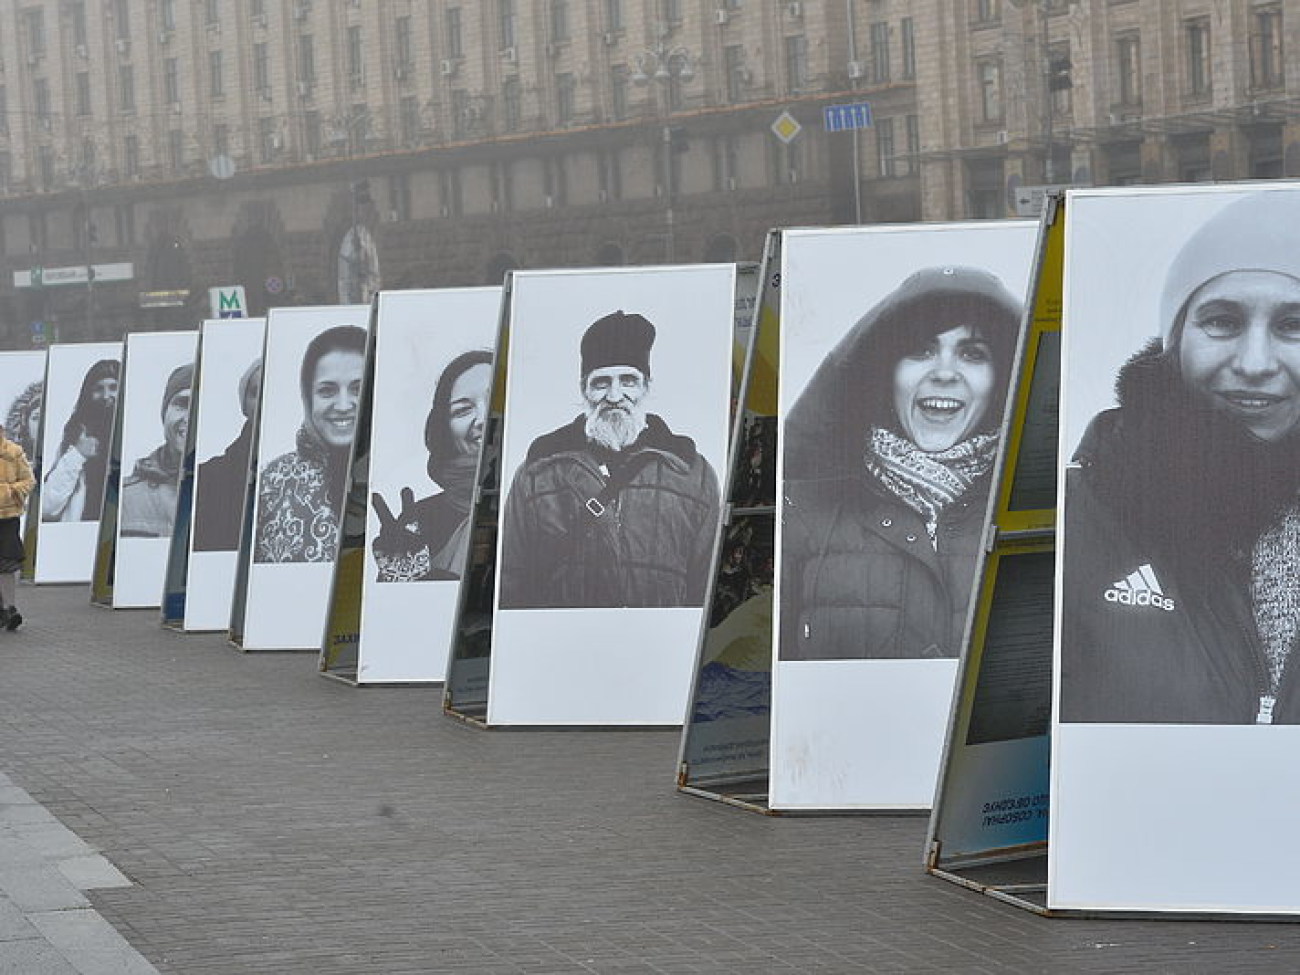 Риторика Майдана спустя 2 года: лозунги другие, суть та же